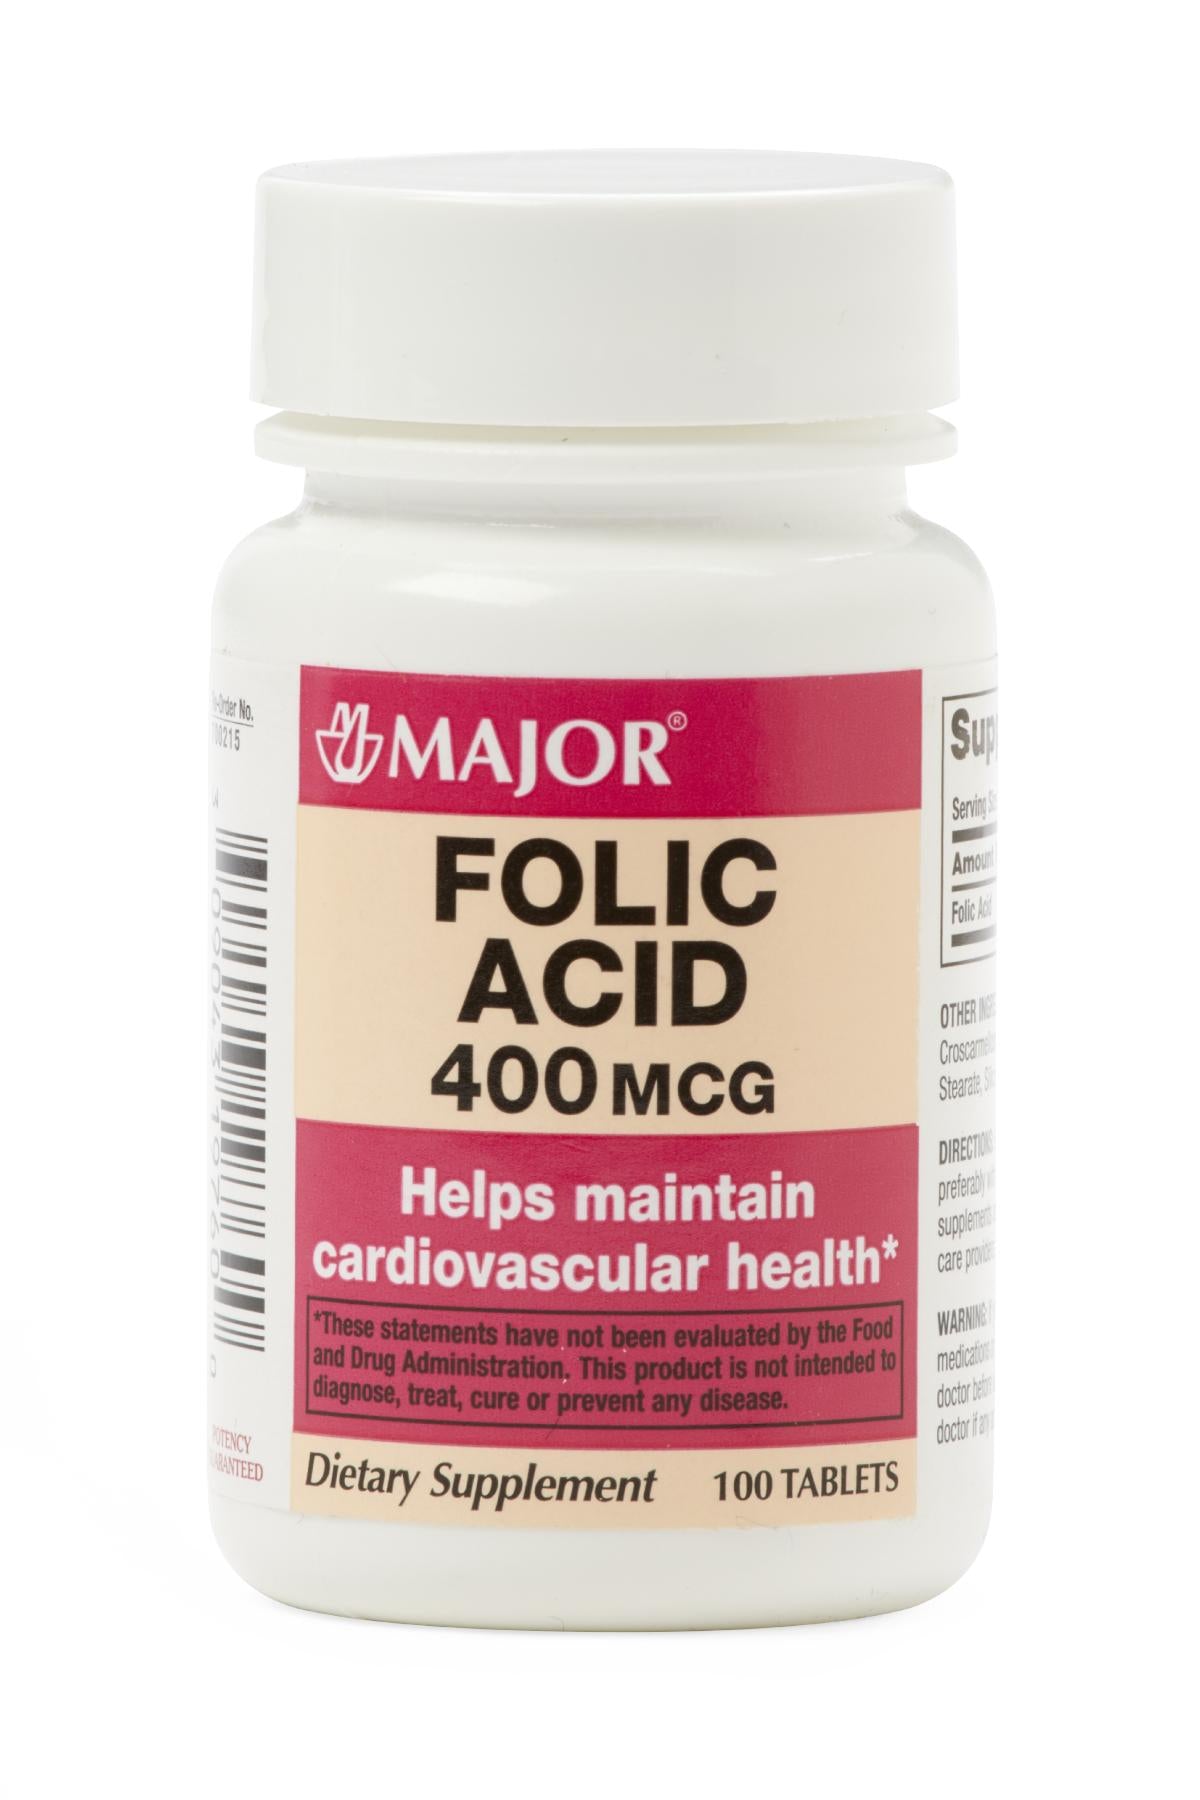 Folic acid.